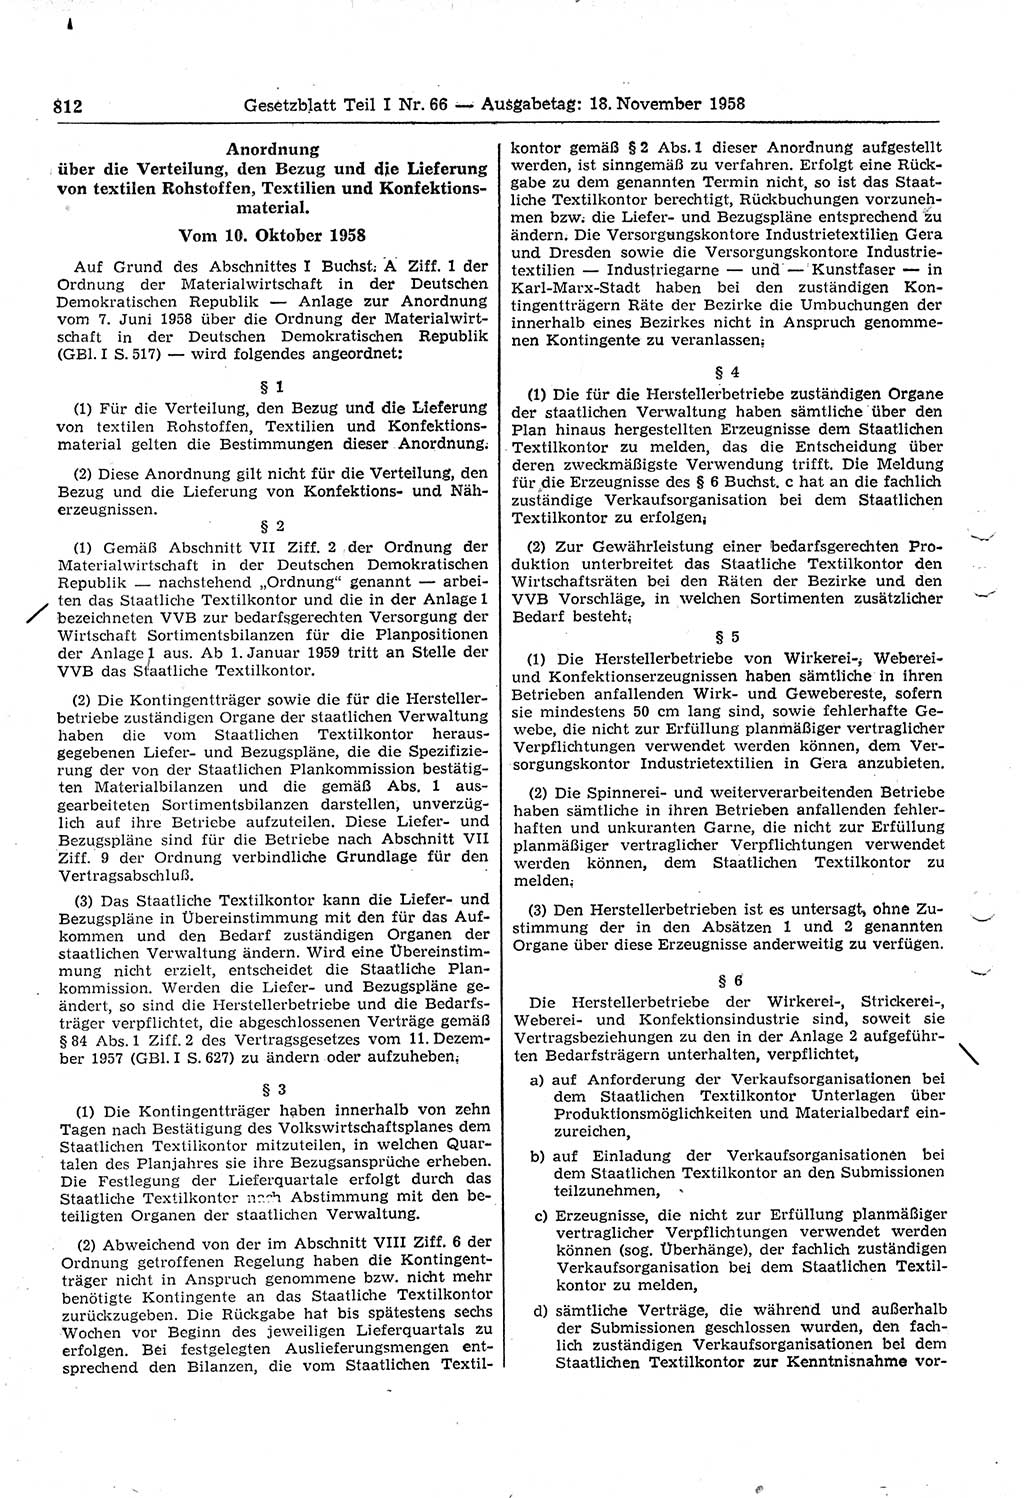 Gesetzblatt (GBl.) der Deutschen Demokratischen Republik (DDR) Teil Ⅰ 1958, Seite 812 (GBl. DDR Ⅰ 1958, S. 812)